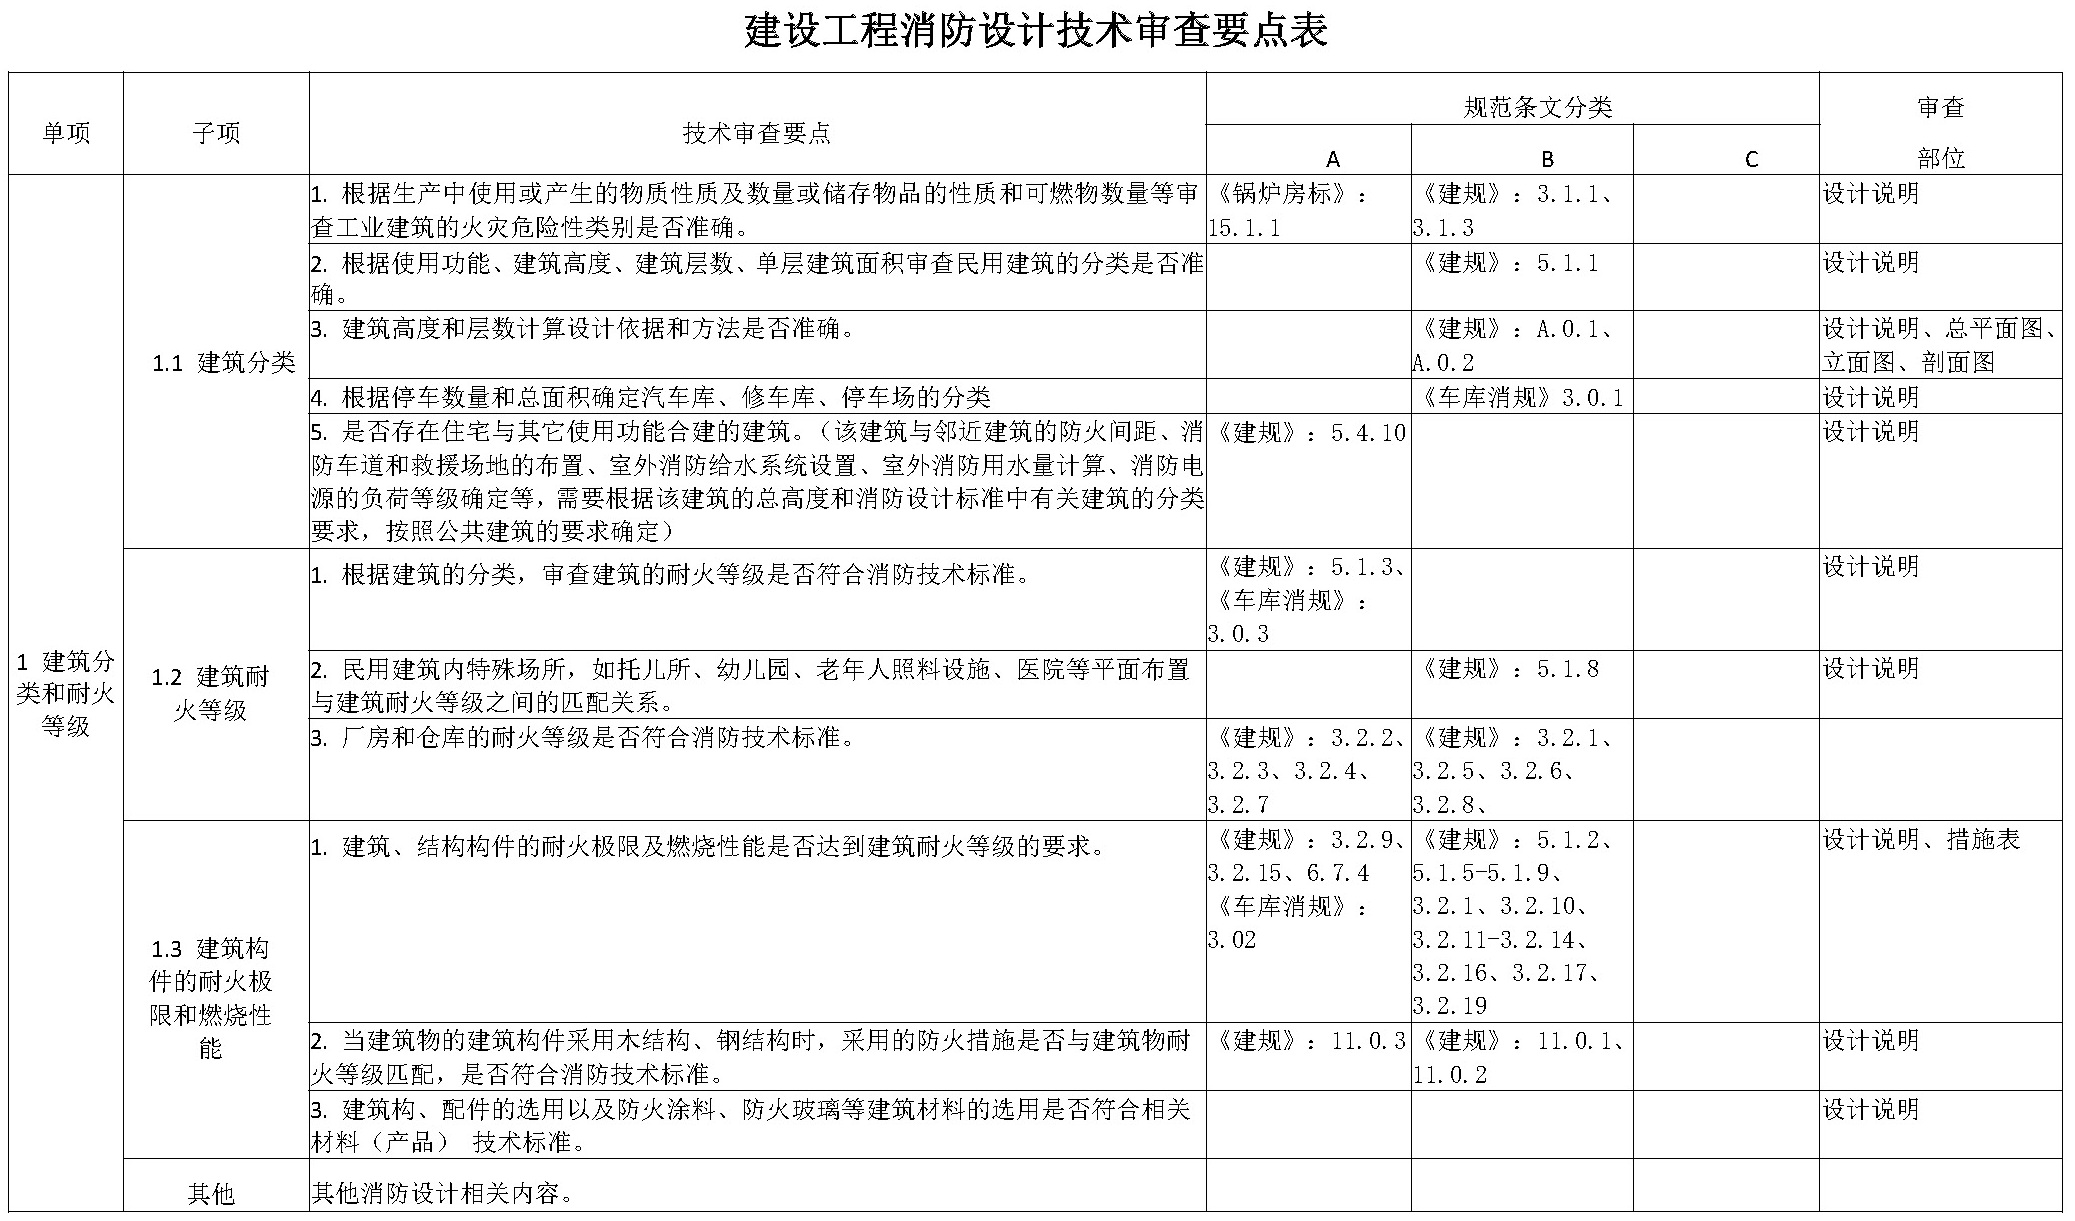 四川省房屋建筑工程消防设计技术审查要点（试行）-5摩卡建筑